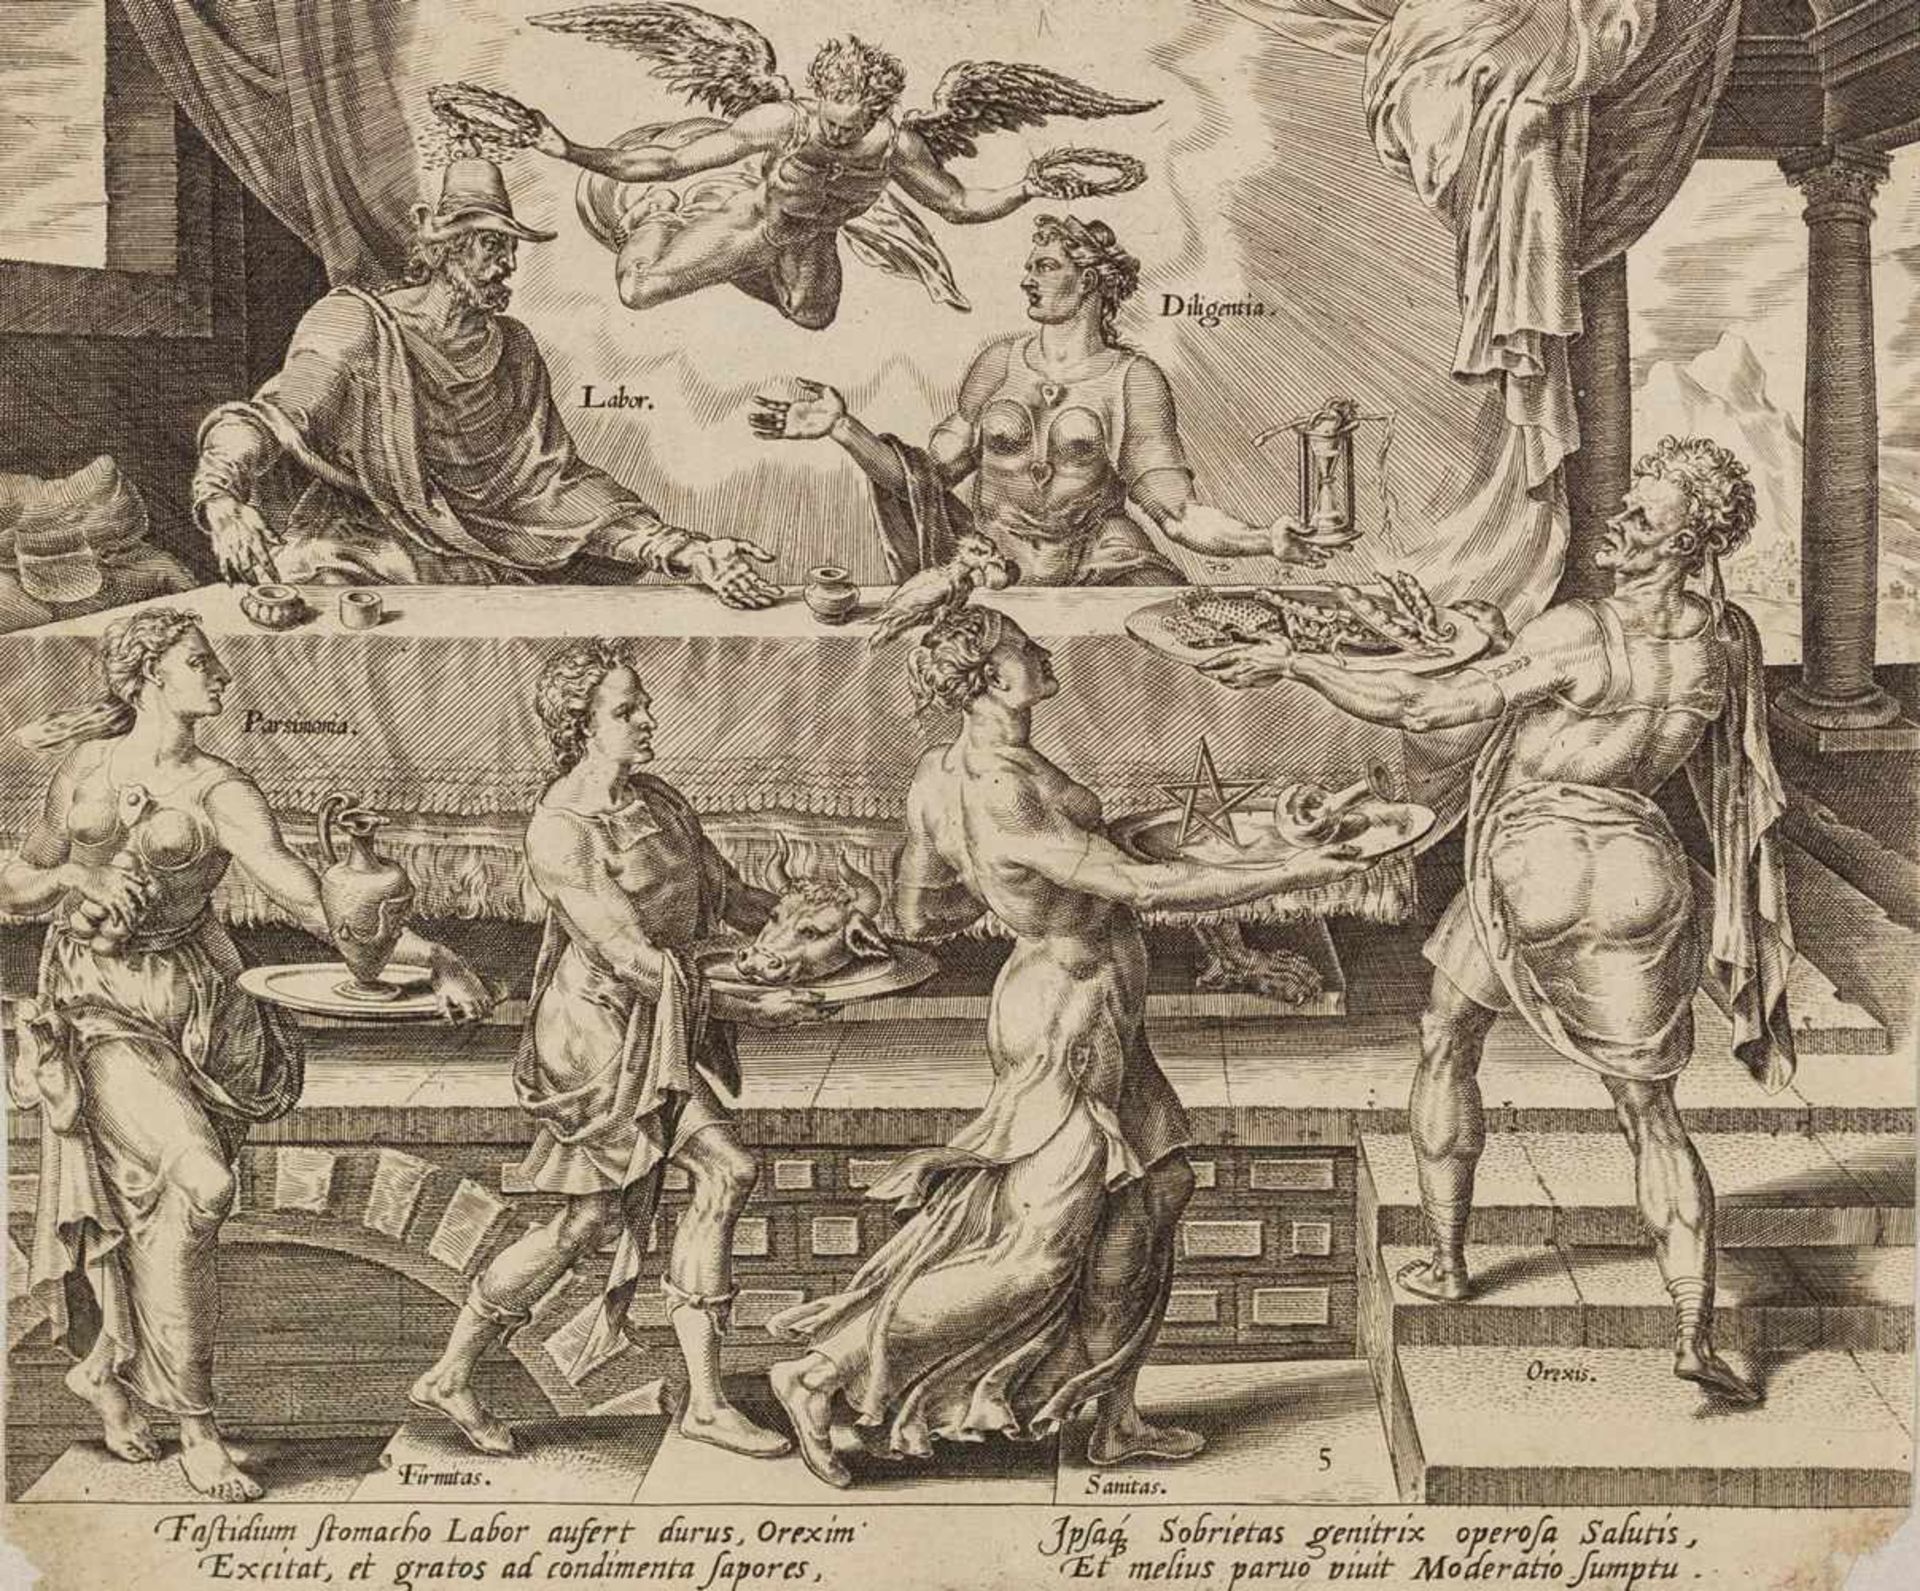 Heemskerck, Maarten van(1498-1574). Die kleine Göttermahlzeit mit Labor und Diligentia. Kupferstich,